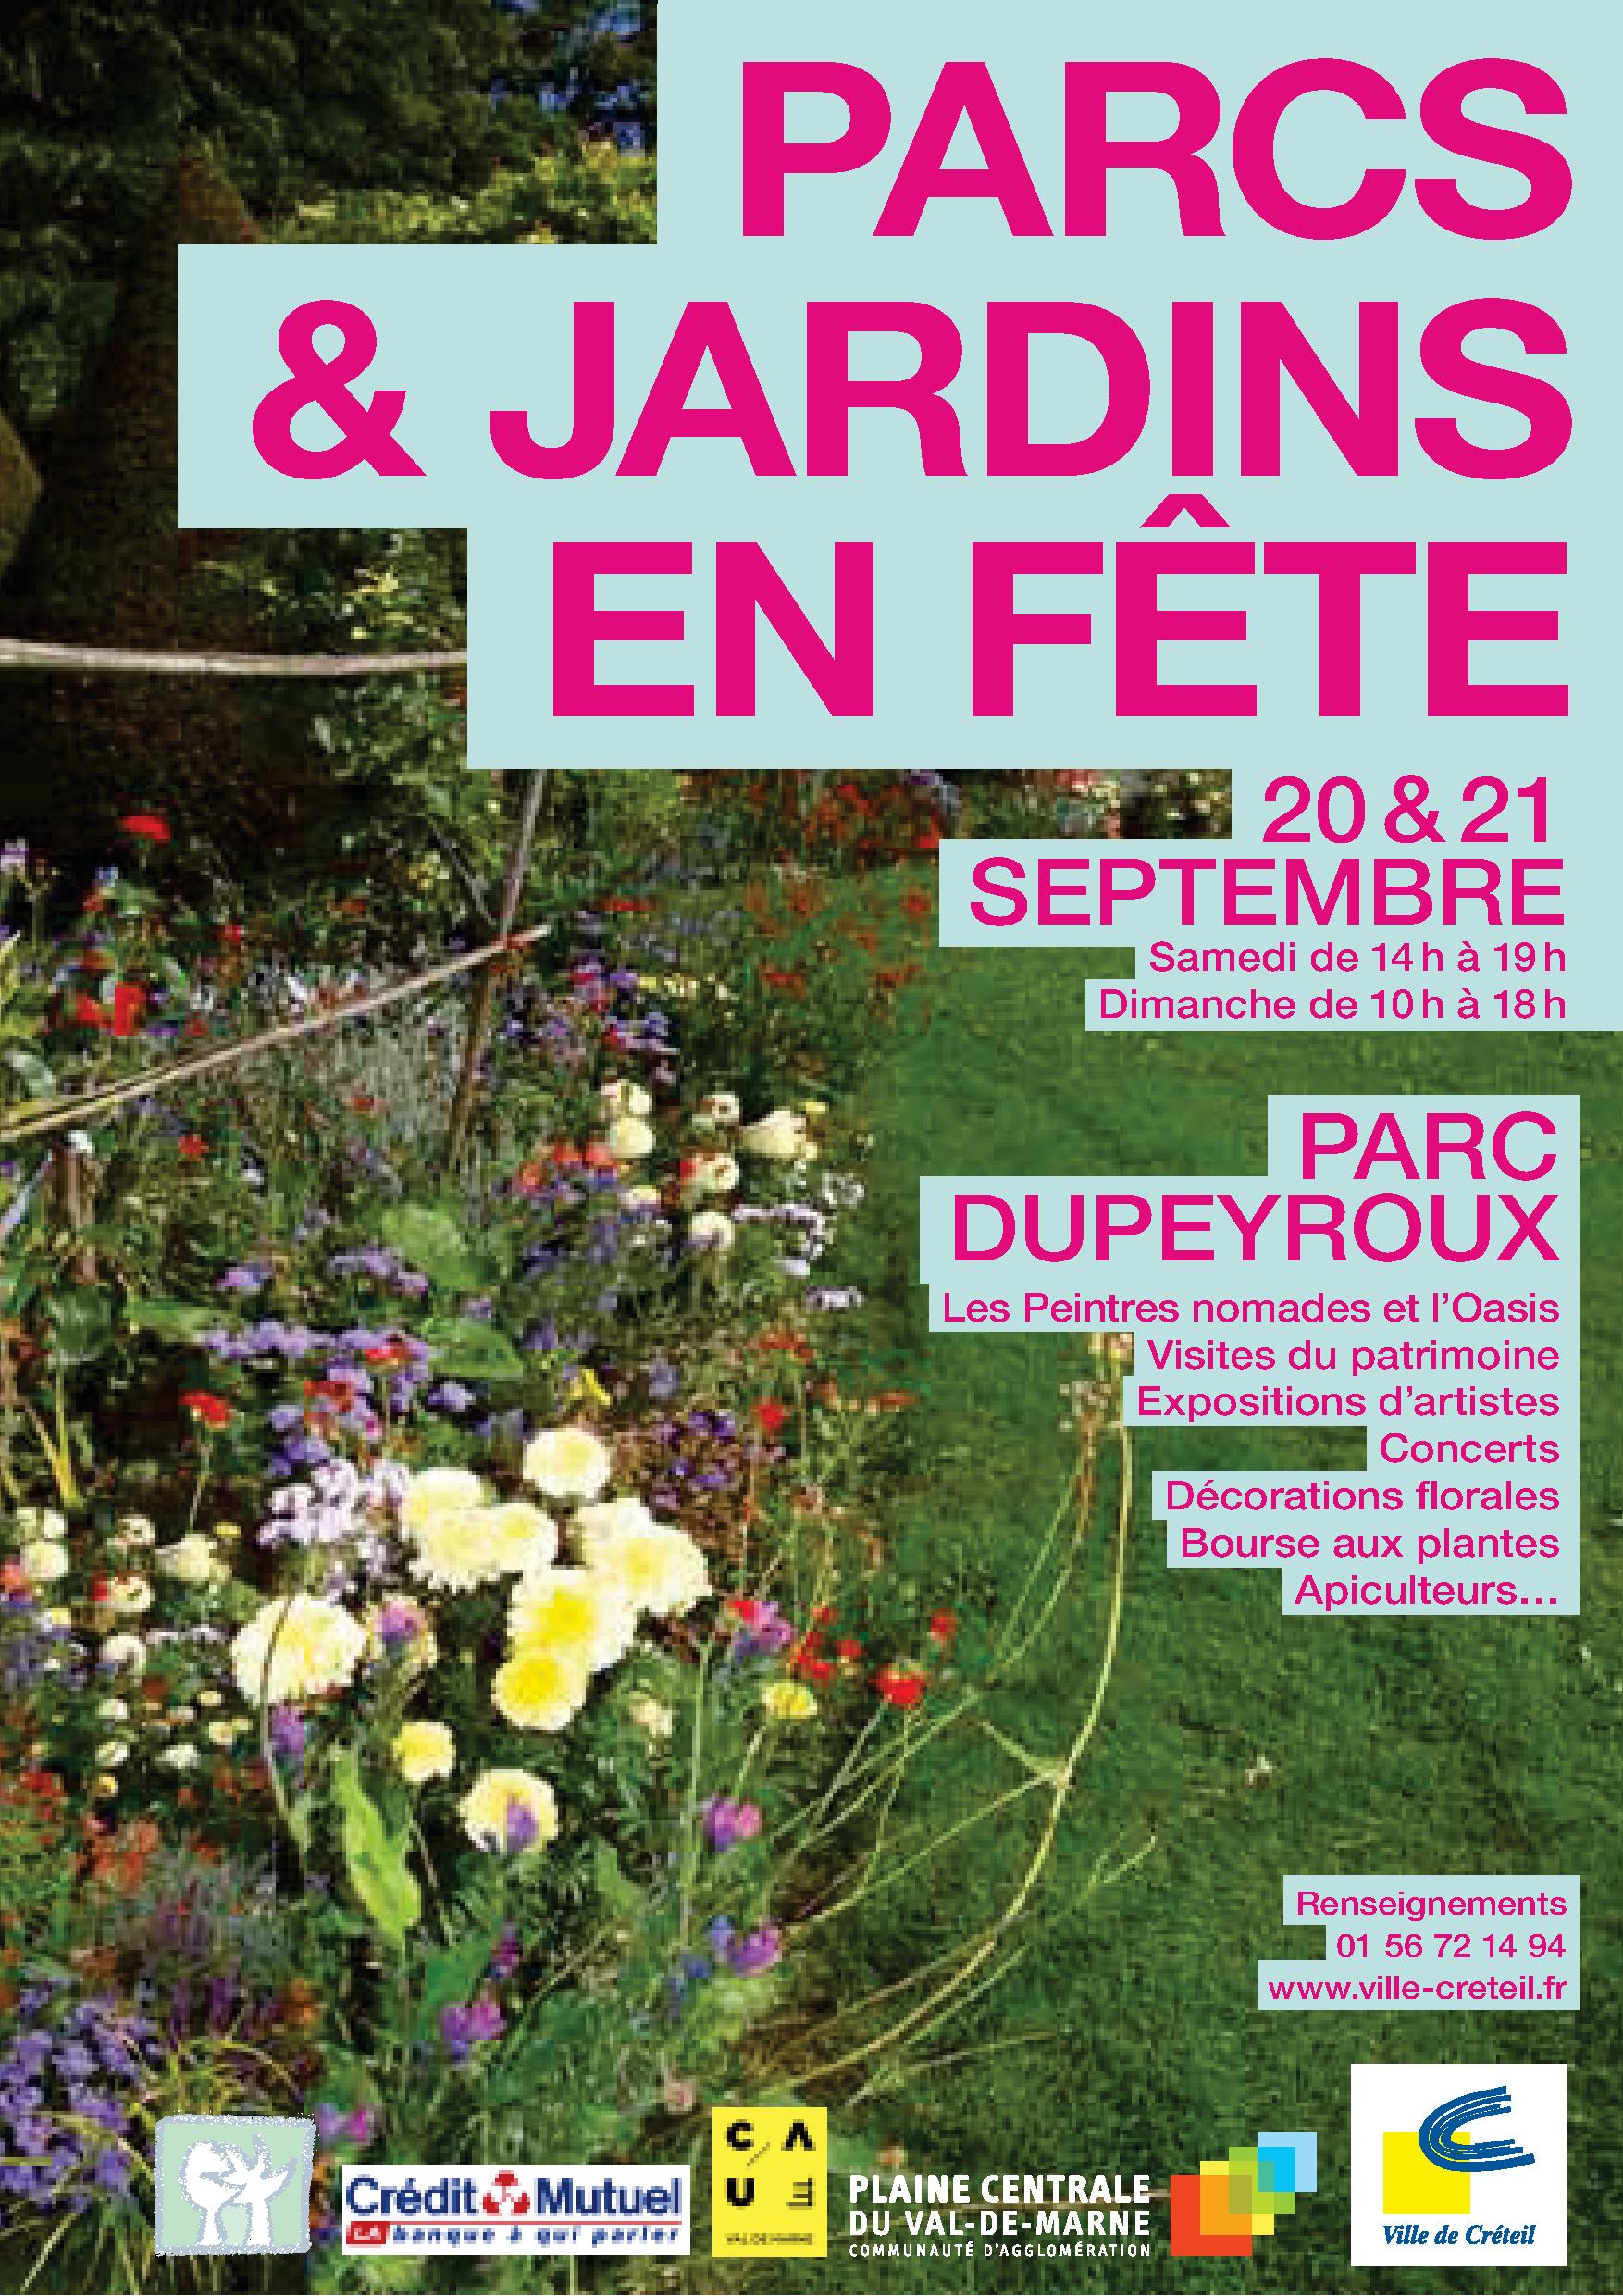 Affiche de "PARCS & JARDINS EN FÊTE" au Parc DUPEYROUX du 19 au 21 septembre 2014 